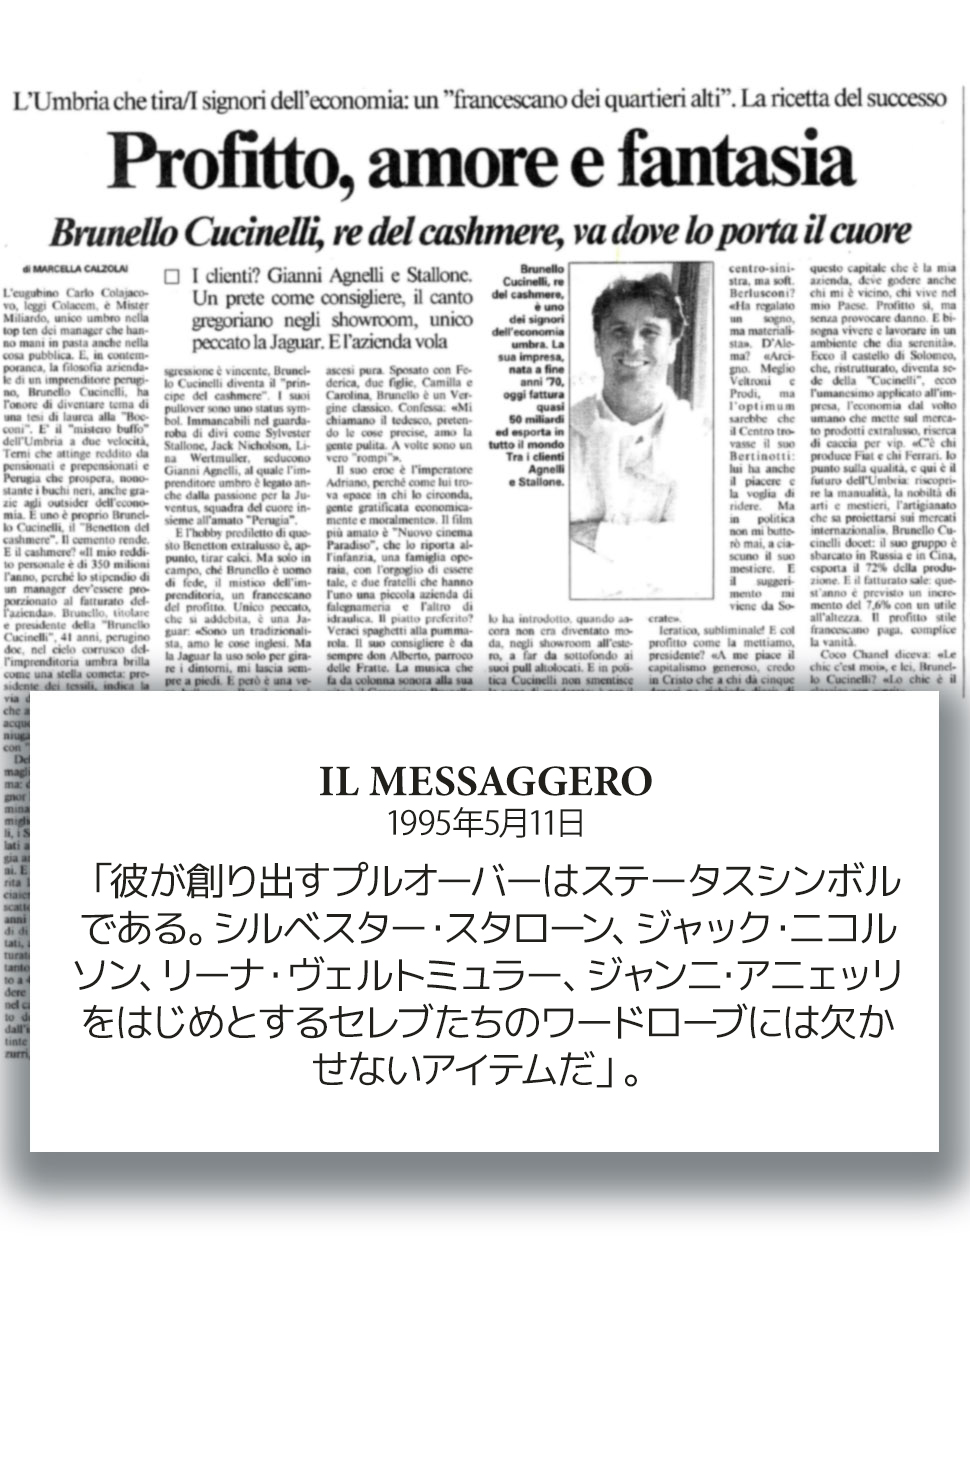 1995 Il Messaggero